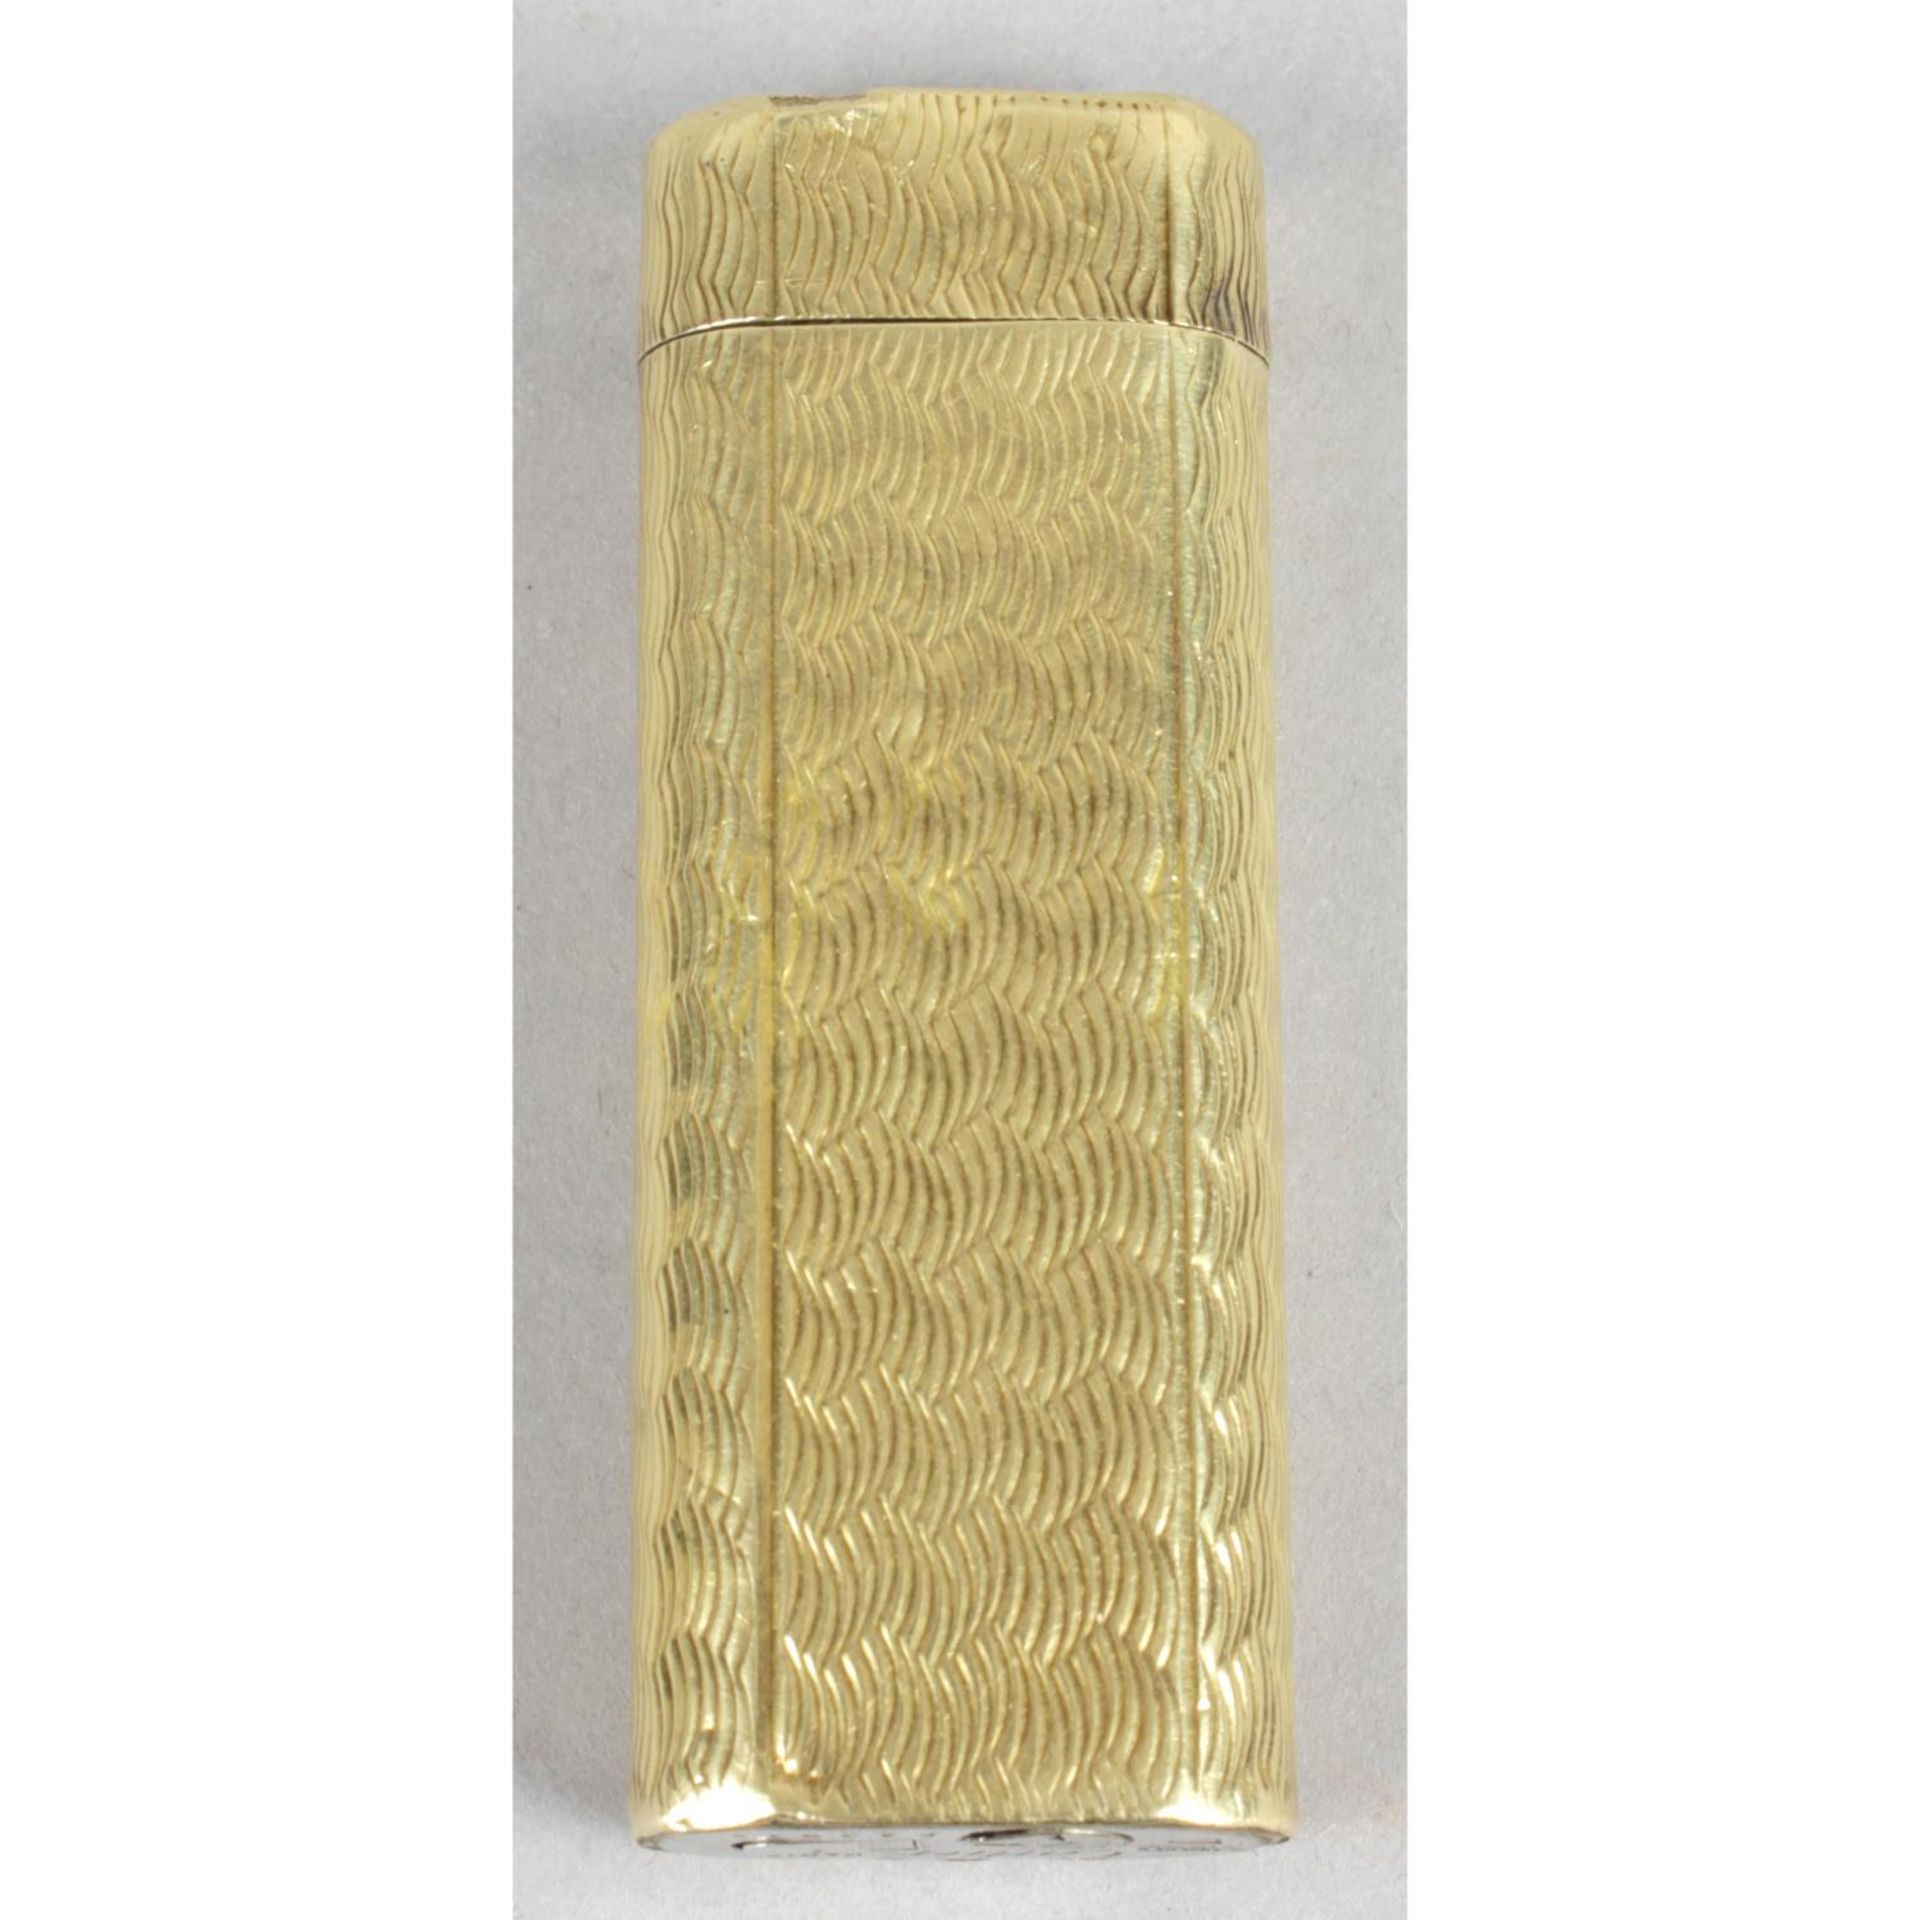 A Cartier gold plated cigarette lighter,